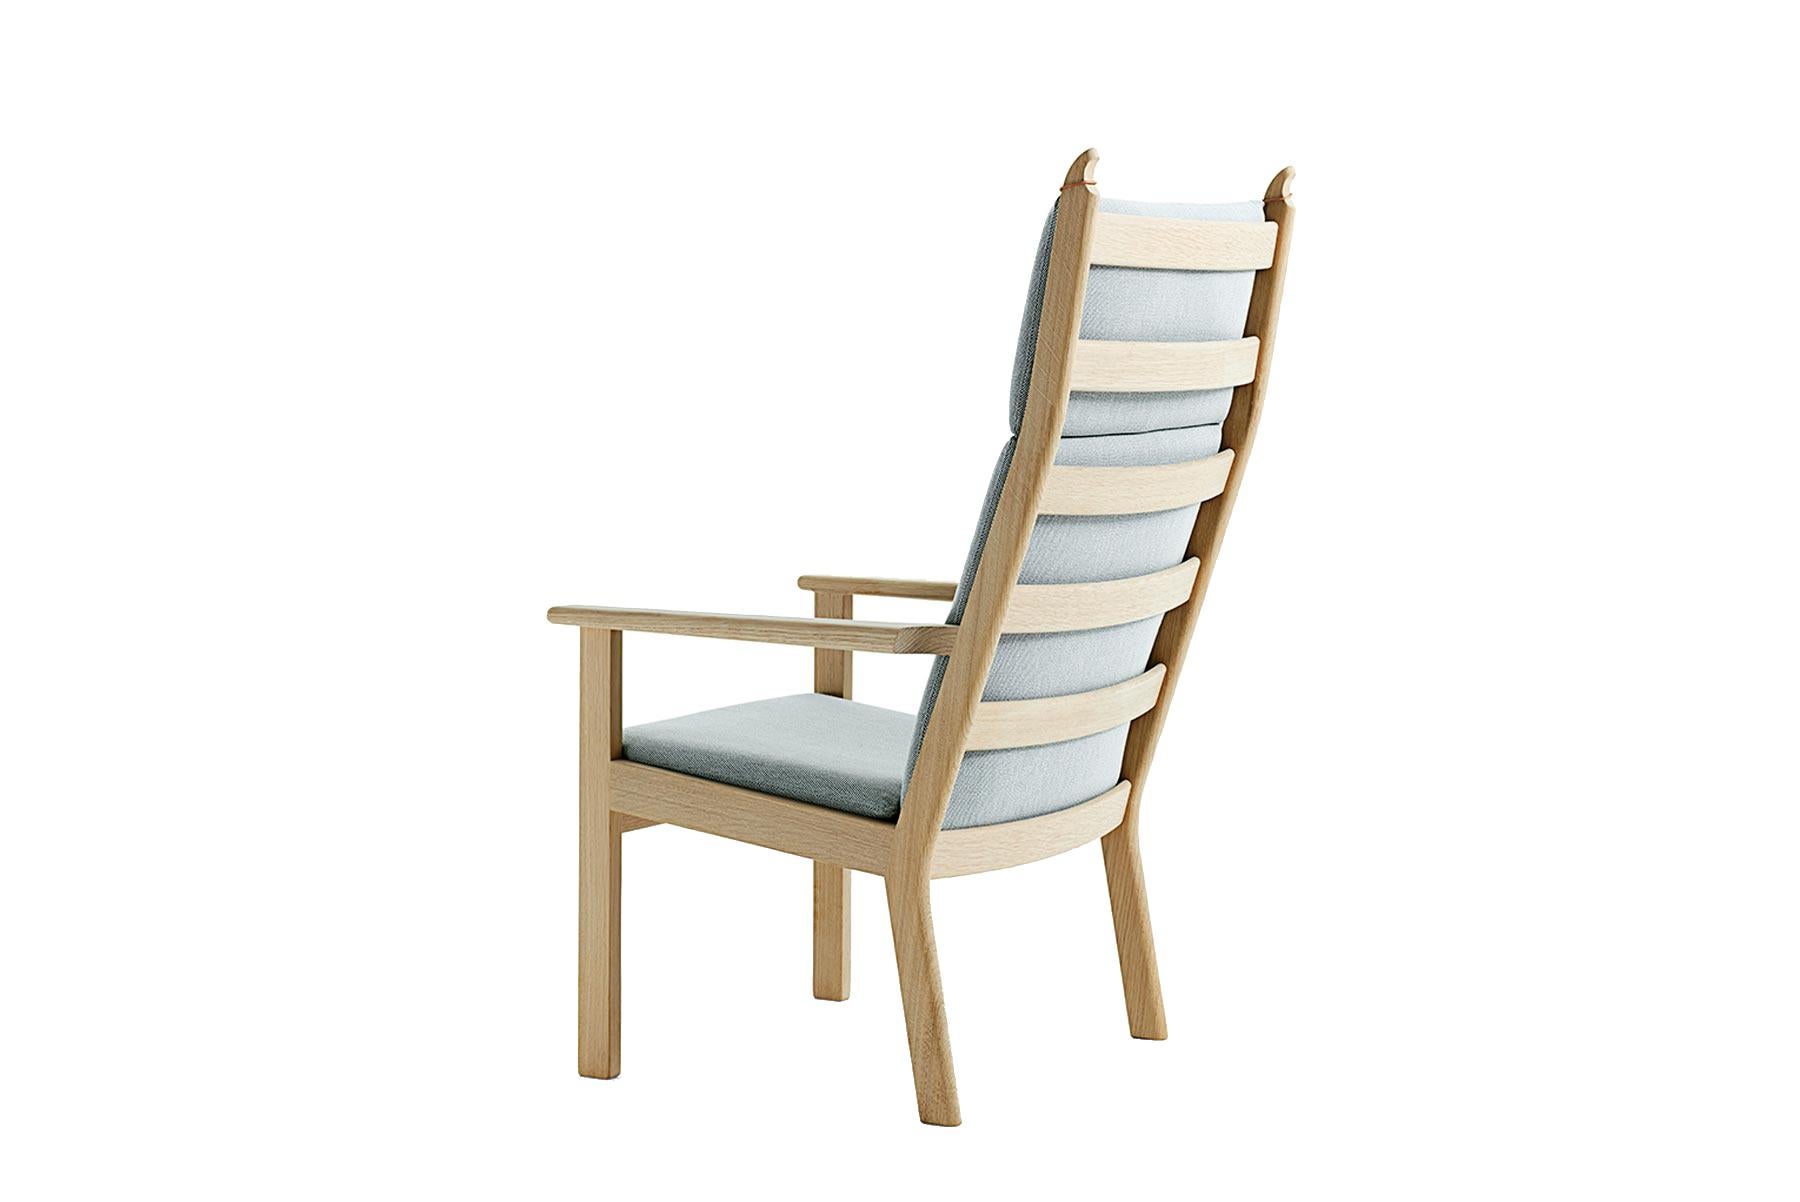 Conçu par Hans Wegner, le fauteuil de salon à haut dossier 284A offre des lignes nettes et claires pour la maison moderne. La chaise est fabriquée à la main dans l'usine de GETAMA à Gedsted, au Danemark, par des ébénistes qualifiés utilisant des